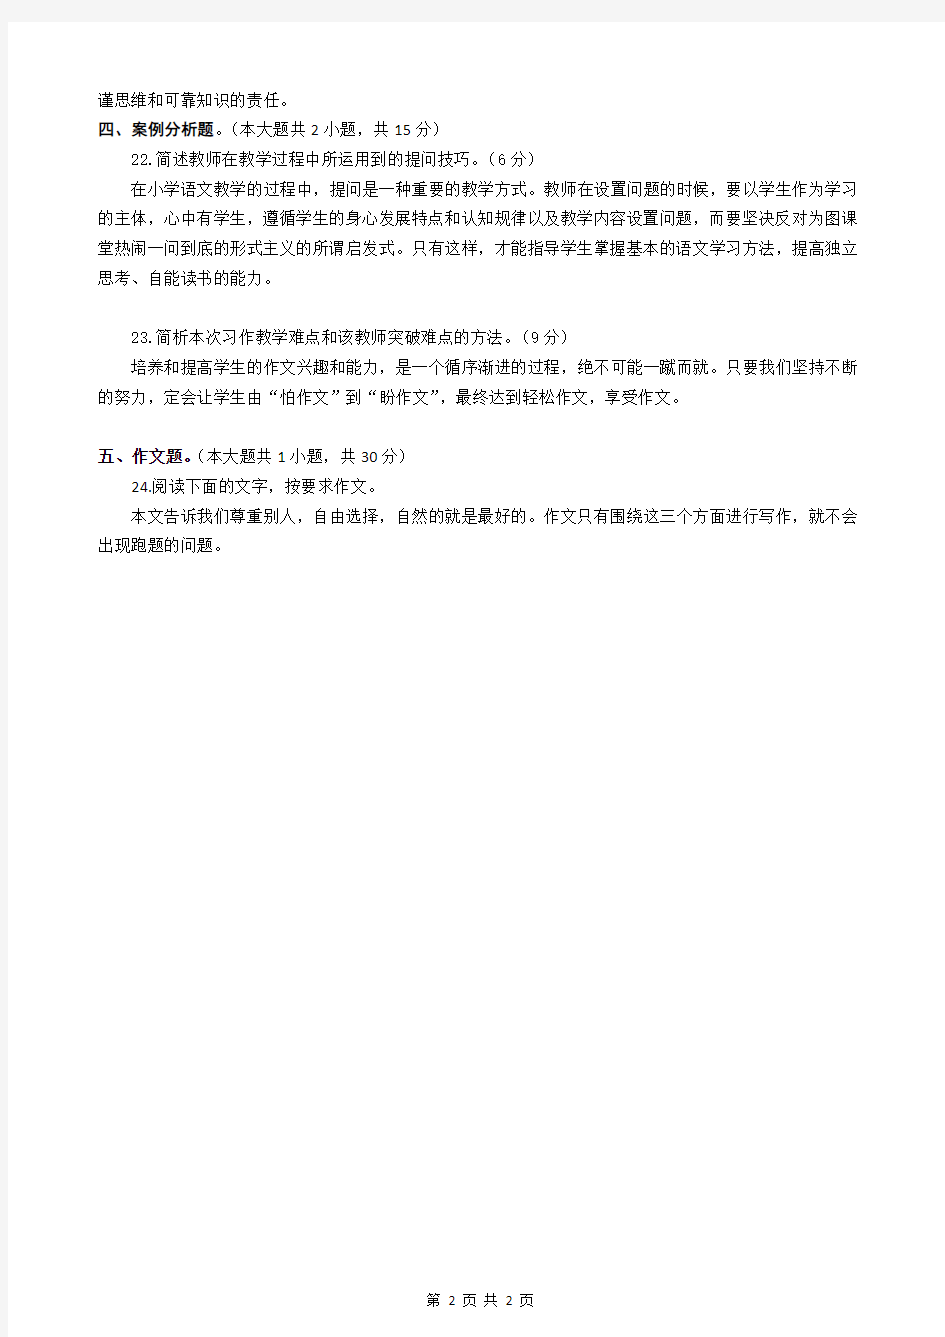 2018年湖北省农村义务教师招聘考试小学语文真题试卷及答案